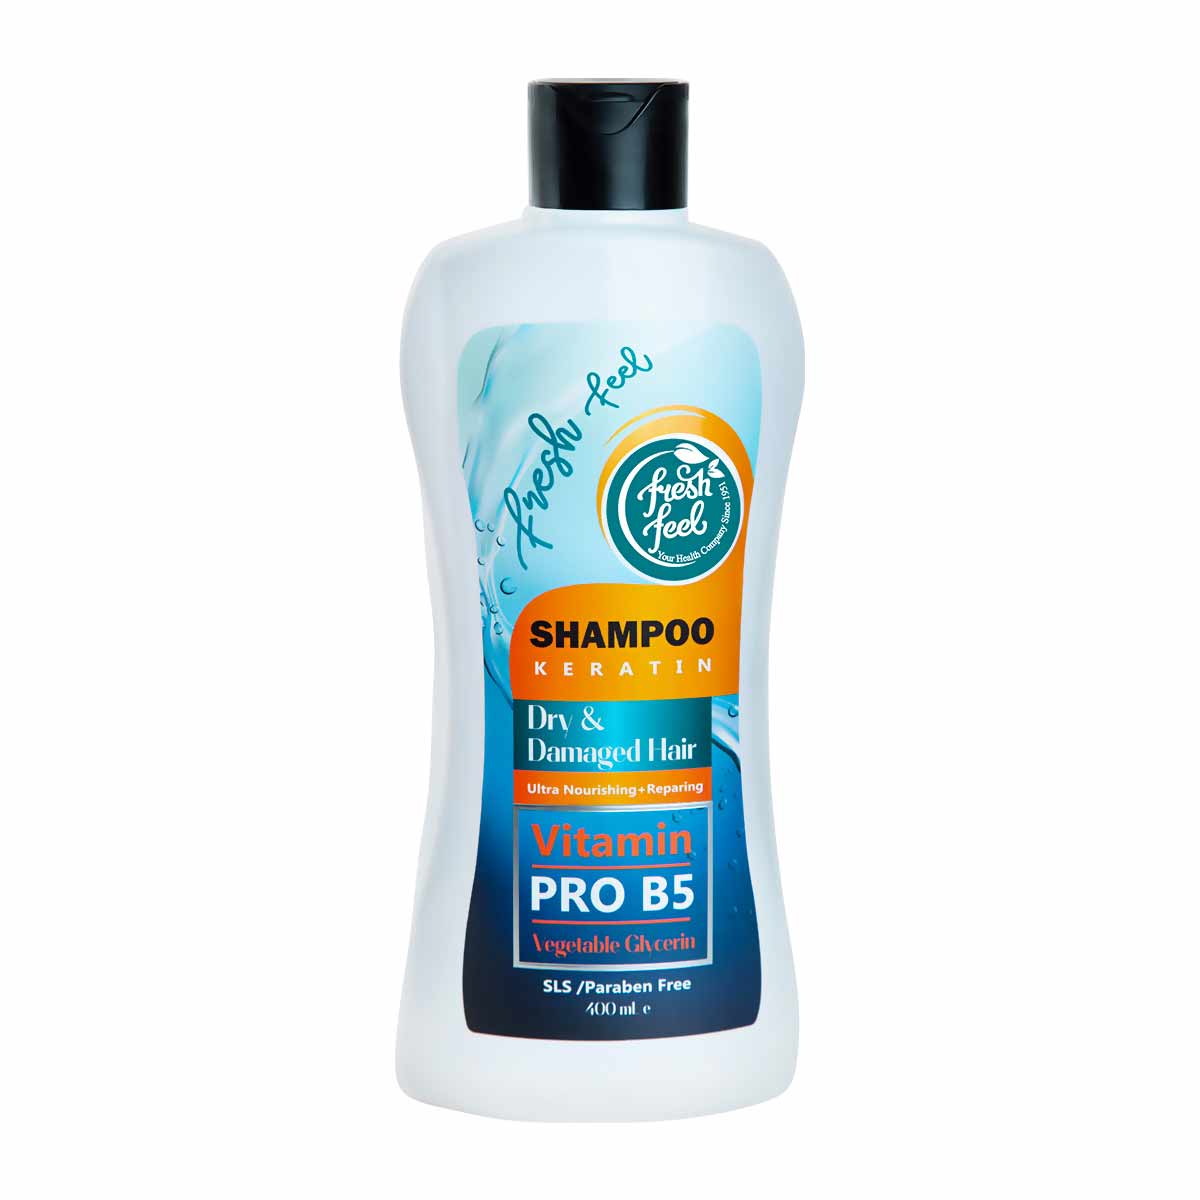 شامپو ترمیم کننده و مغذی موهای خشک وآسیب دیده فرش فیل مدل کراتین Fresh Feel Shampoo KERATIN حجم 400 میلی لیتر